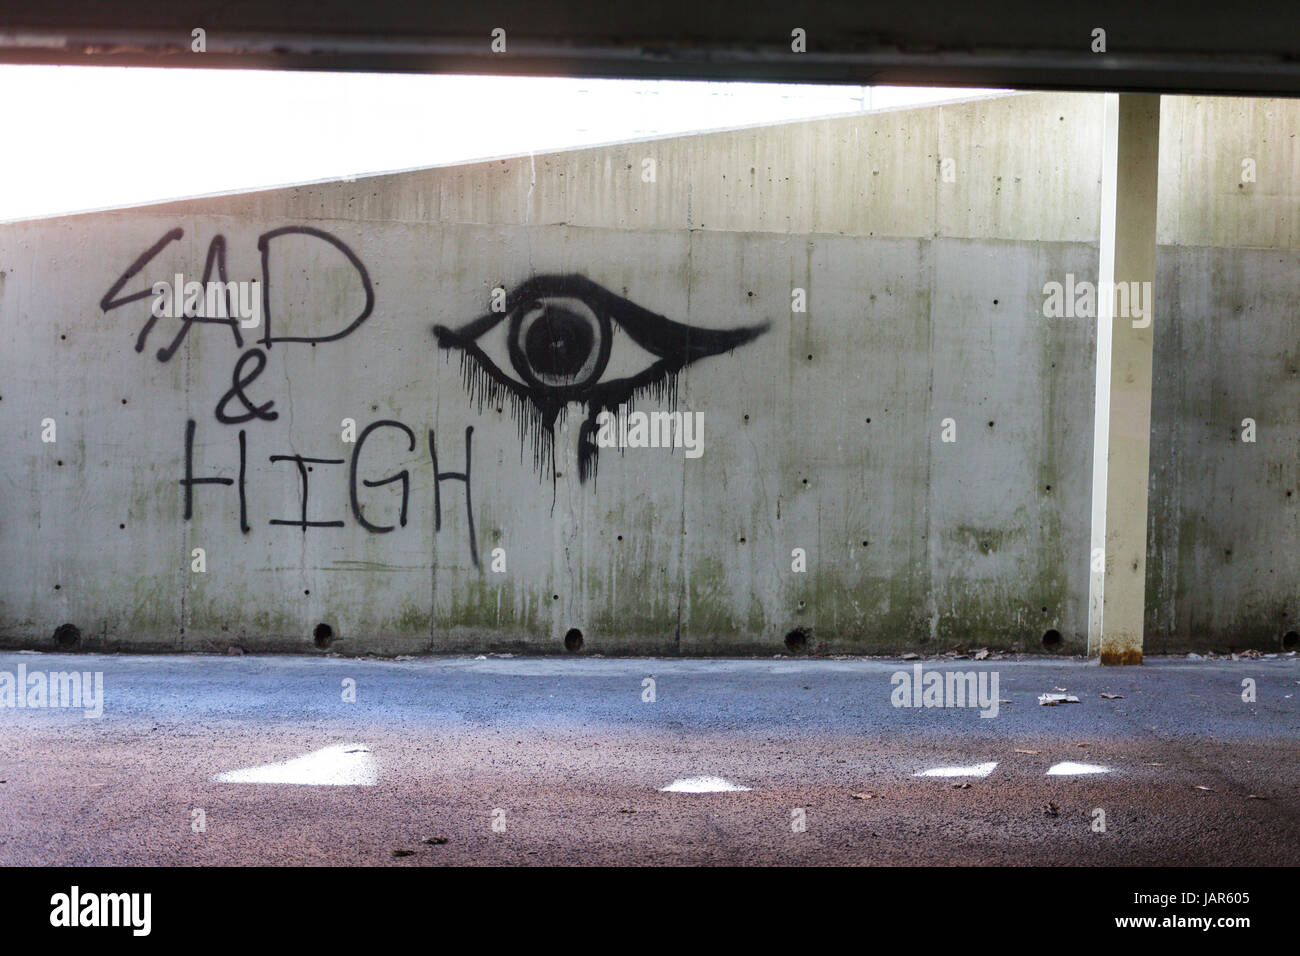 TROY, NEW YORK, 25. Februar 2017: Graffiti an der Wand eines Parkplatzes "Sad und High" kann Ausdruck der Opiatabhängigkeit fegen USA sein. Stockfoto